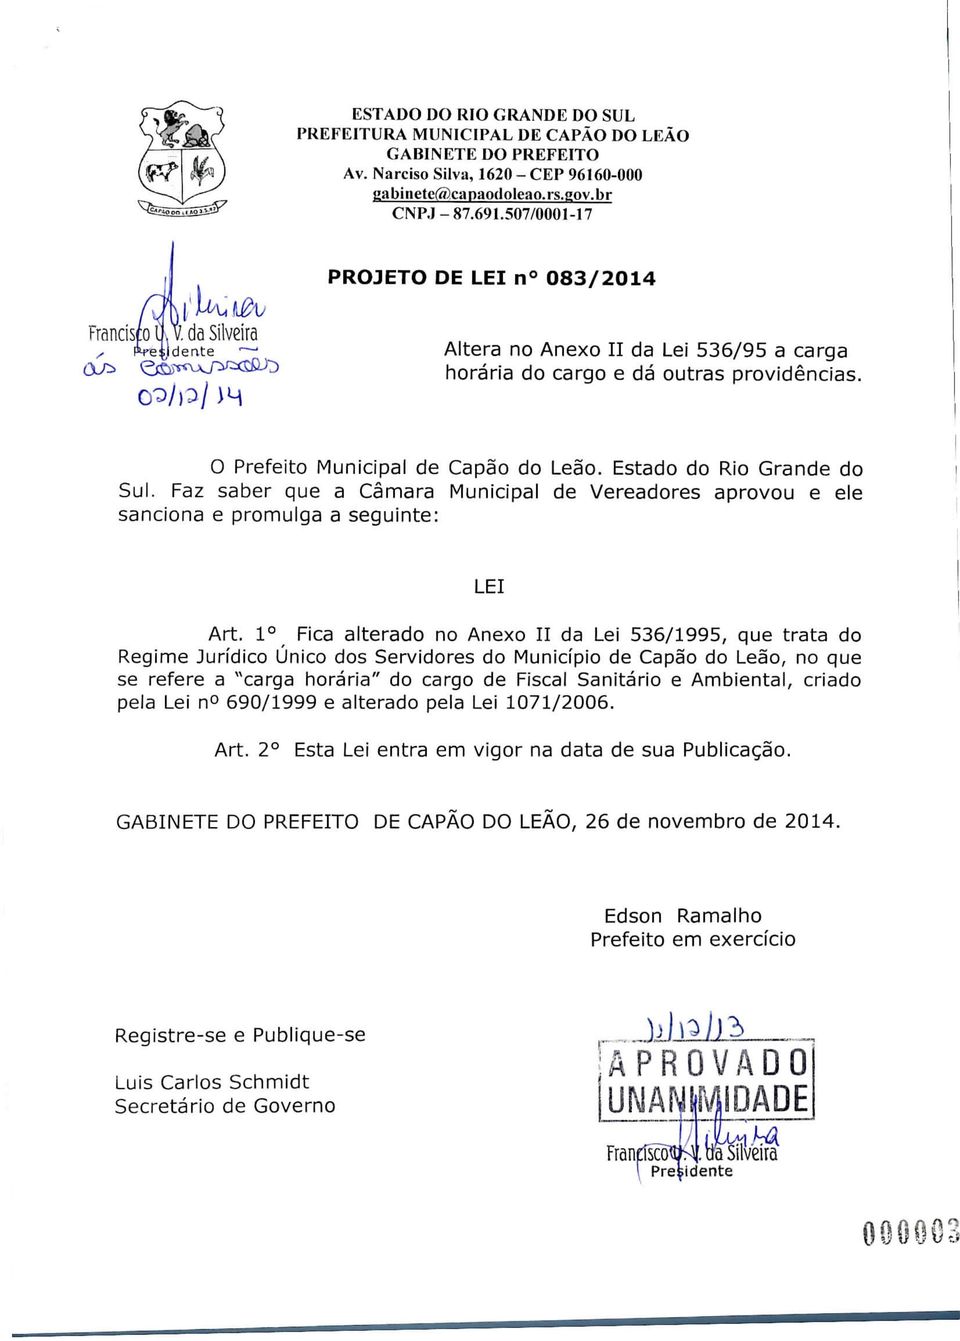 Estado do Rio Grande do Sul. Faz saber que a Câmara Municipal de Vereadores aprovou e ele sanciona e promulga a seguinte: LEI Art.